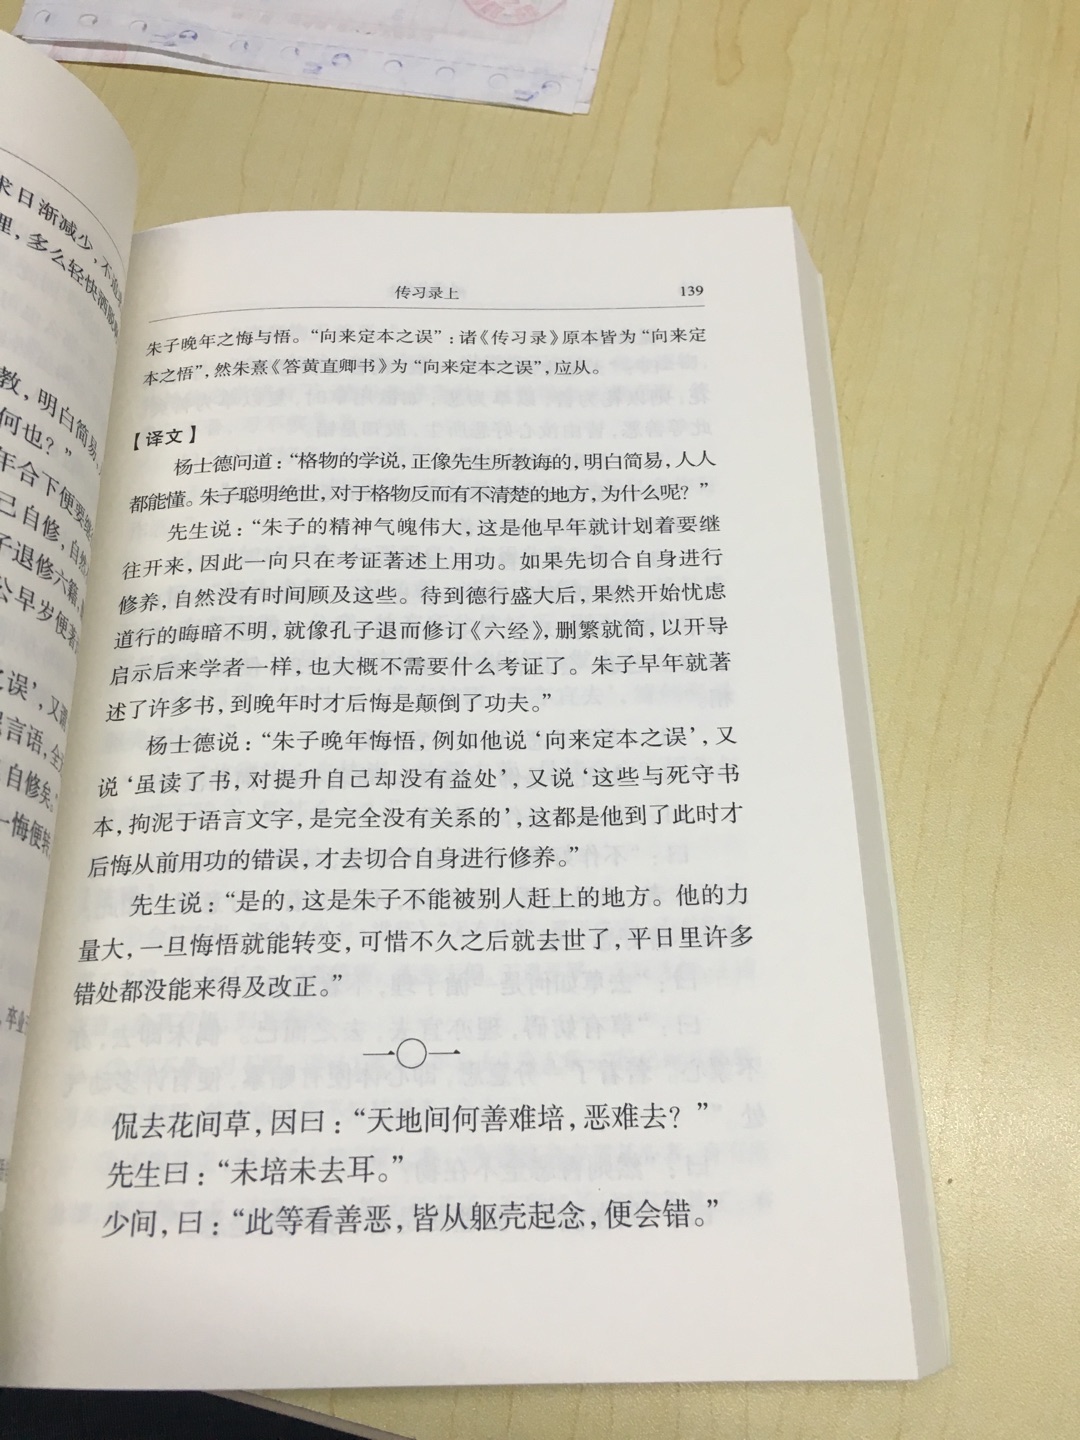 中华书局此版字大清楚，印刷不错。可惜文字横排，少了许多古意